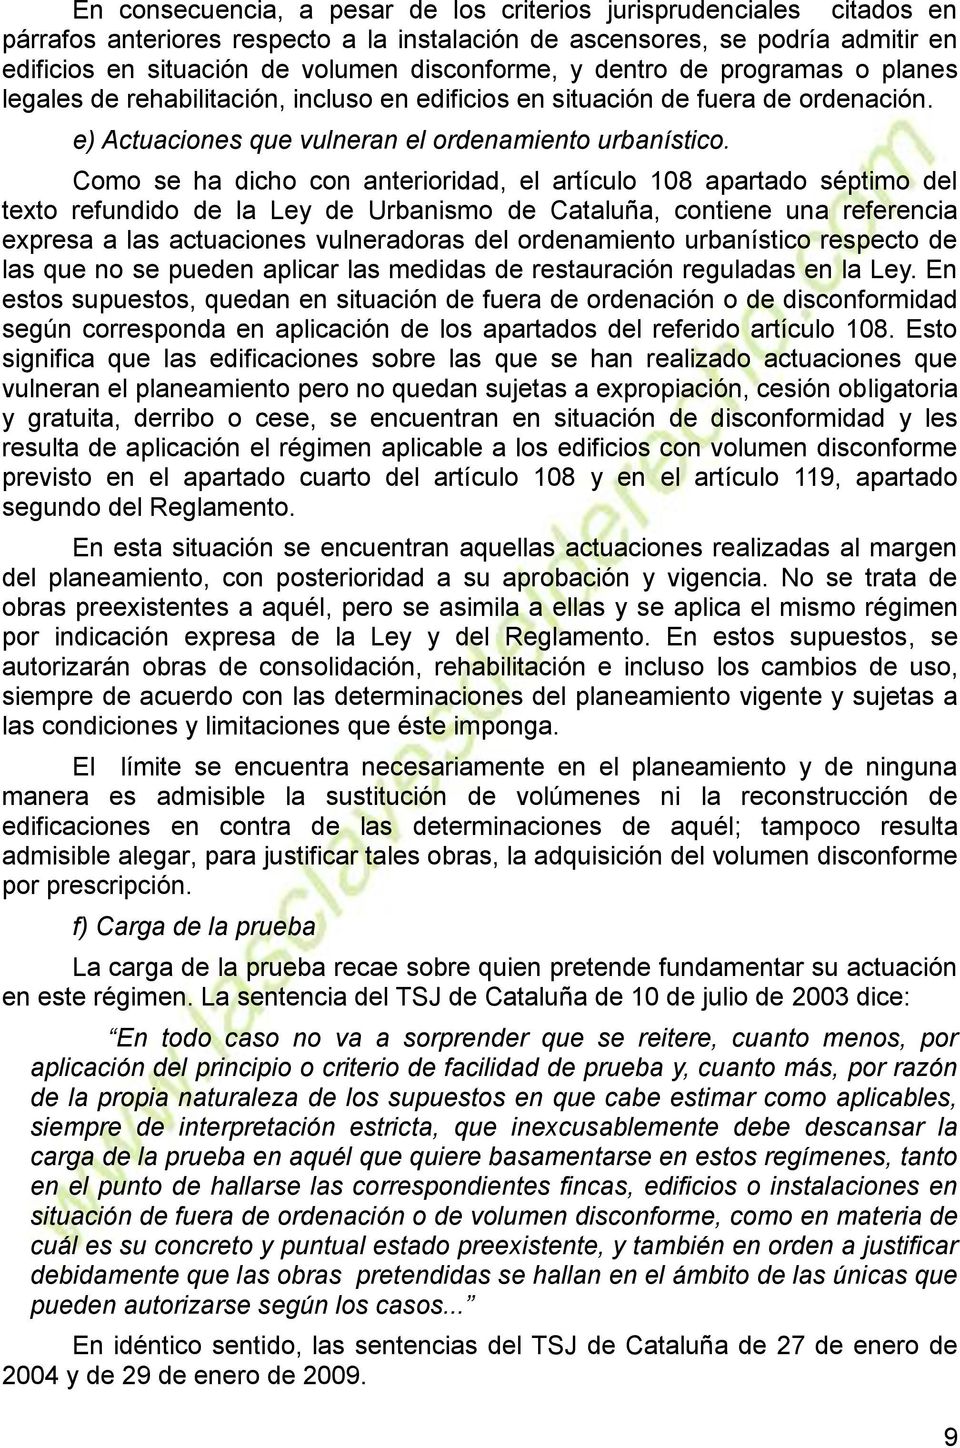 Como se ha dicho con anterioridad, el artículo 108 apartado séptimo del texto refundido de la Ley de Urbanismo de Cataluña, contiene una referencia expresa a las actuaciones vulneradoras del